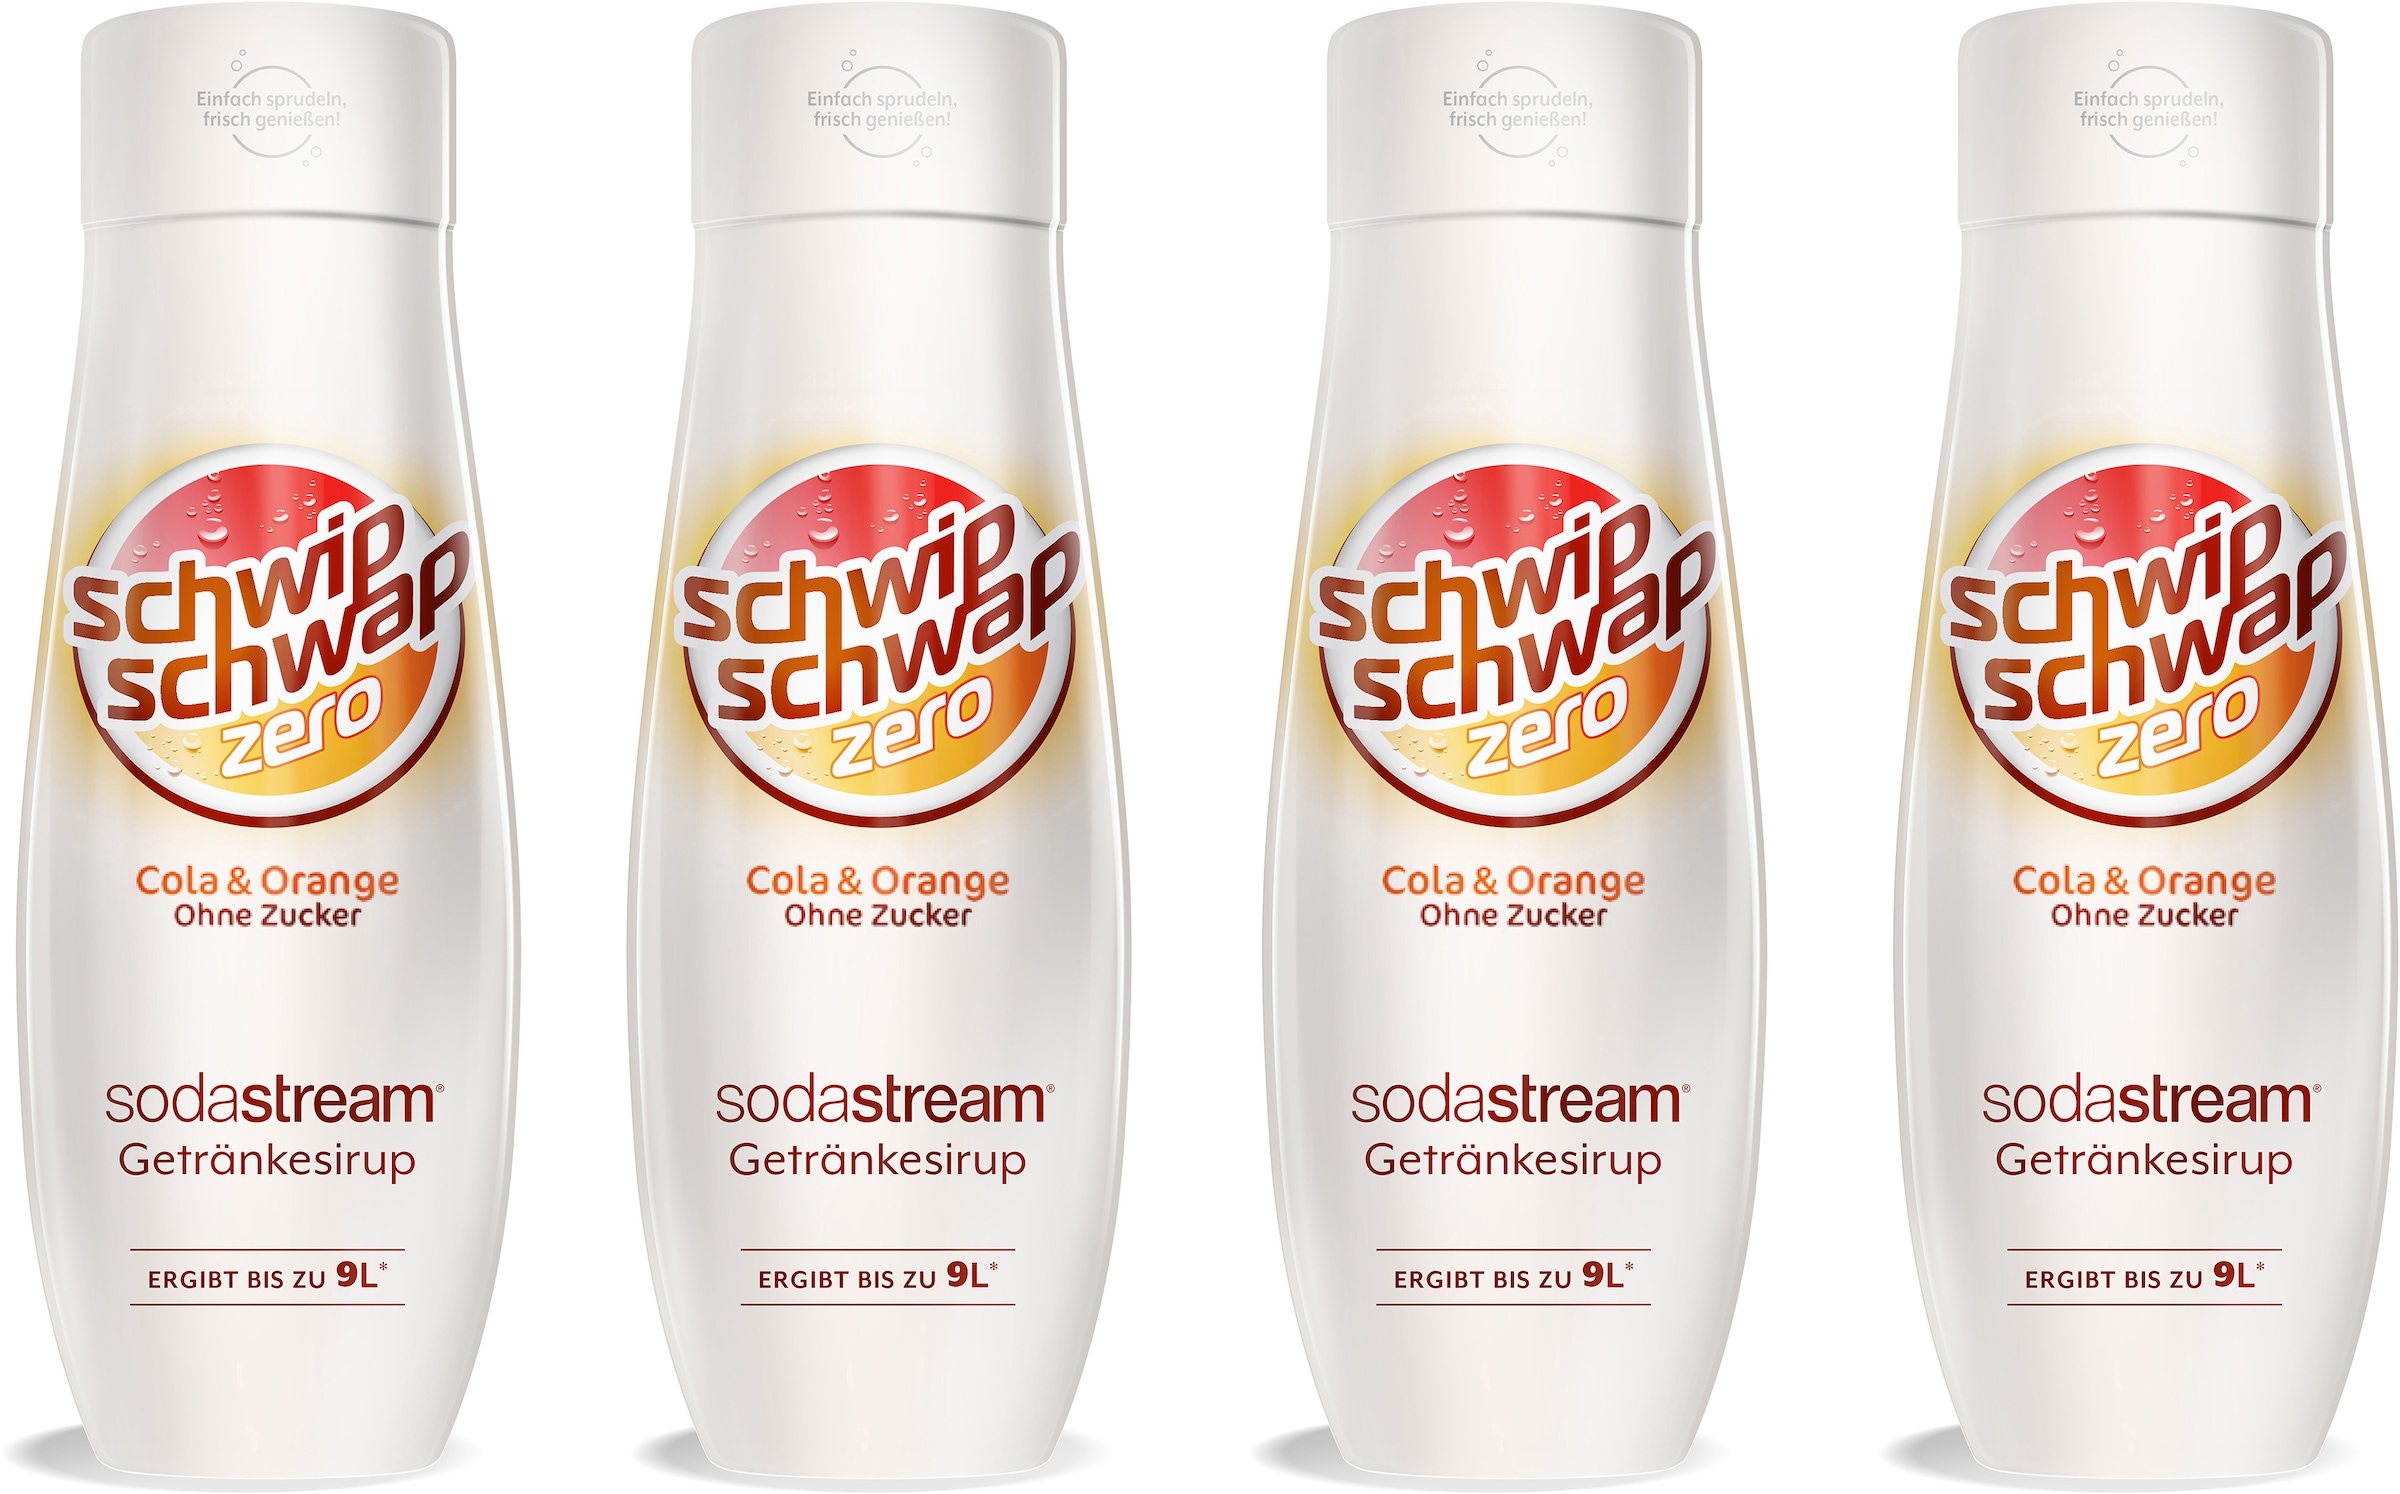 SodaStream Getränke-Sirup, SchwipSchwap (Cola & Orange), ohne Zucker, (4 Flaschen), für bis zu 9 Liter Fertiggetränk